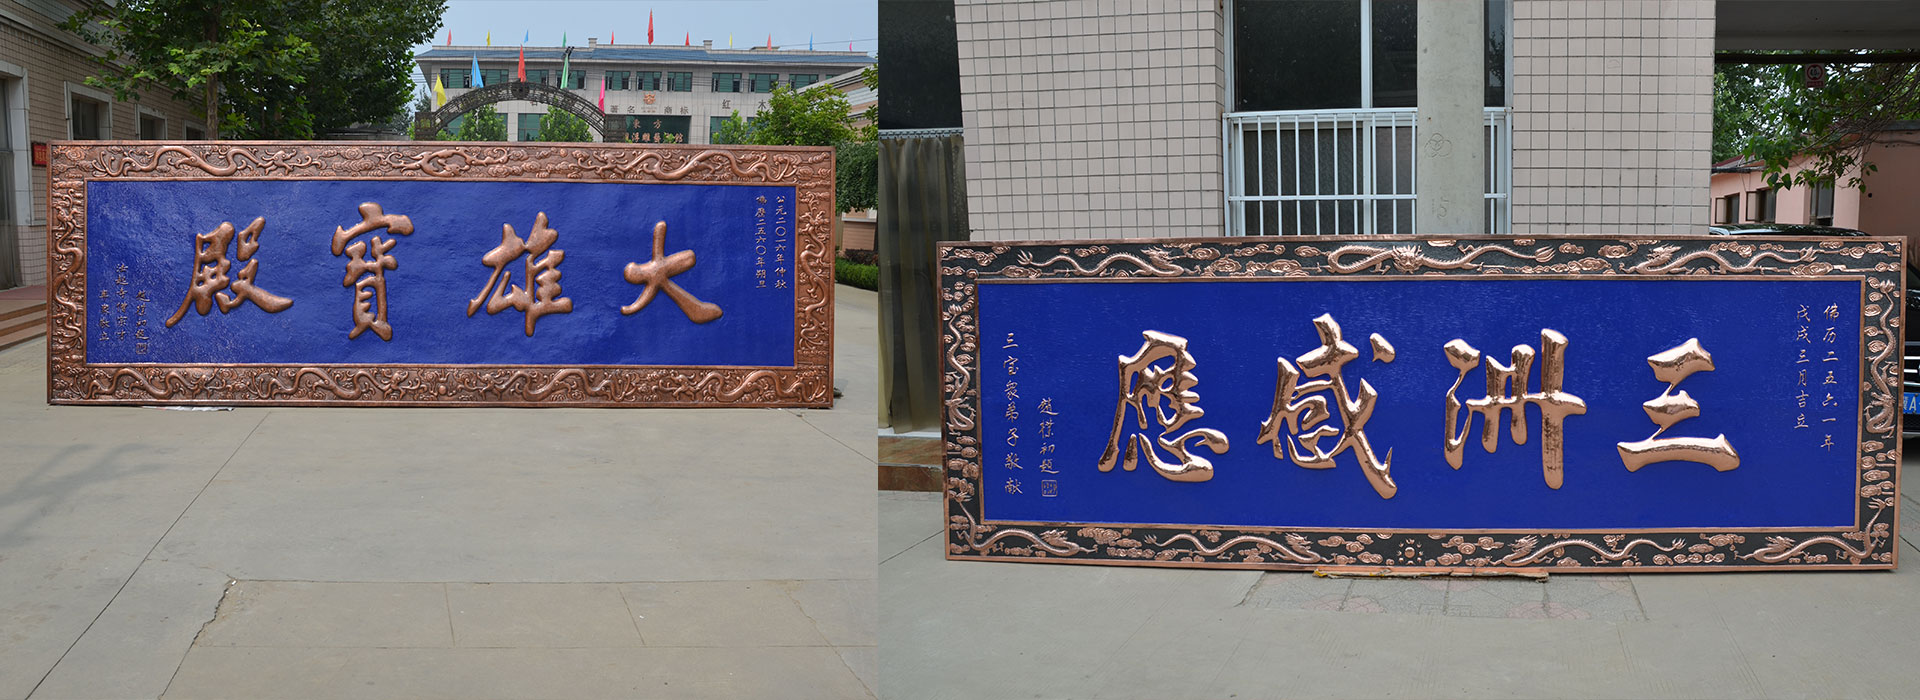 千佛墻,銅牌匾,銅浮雕